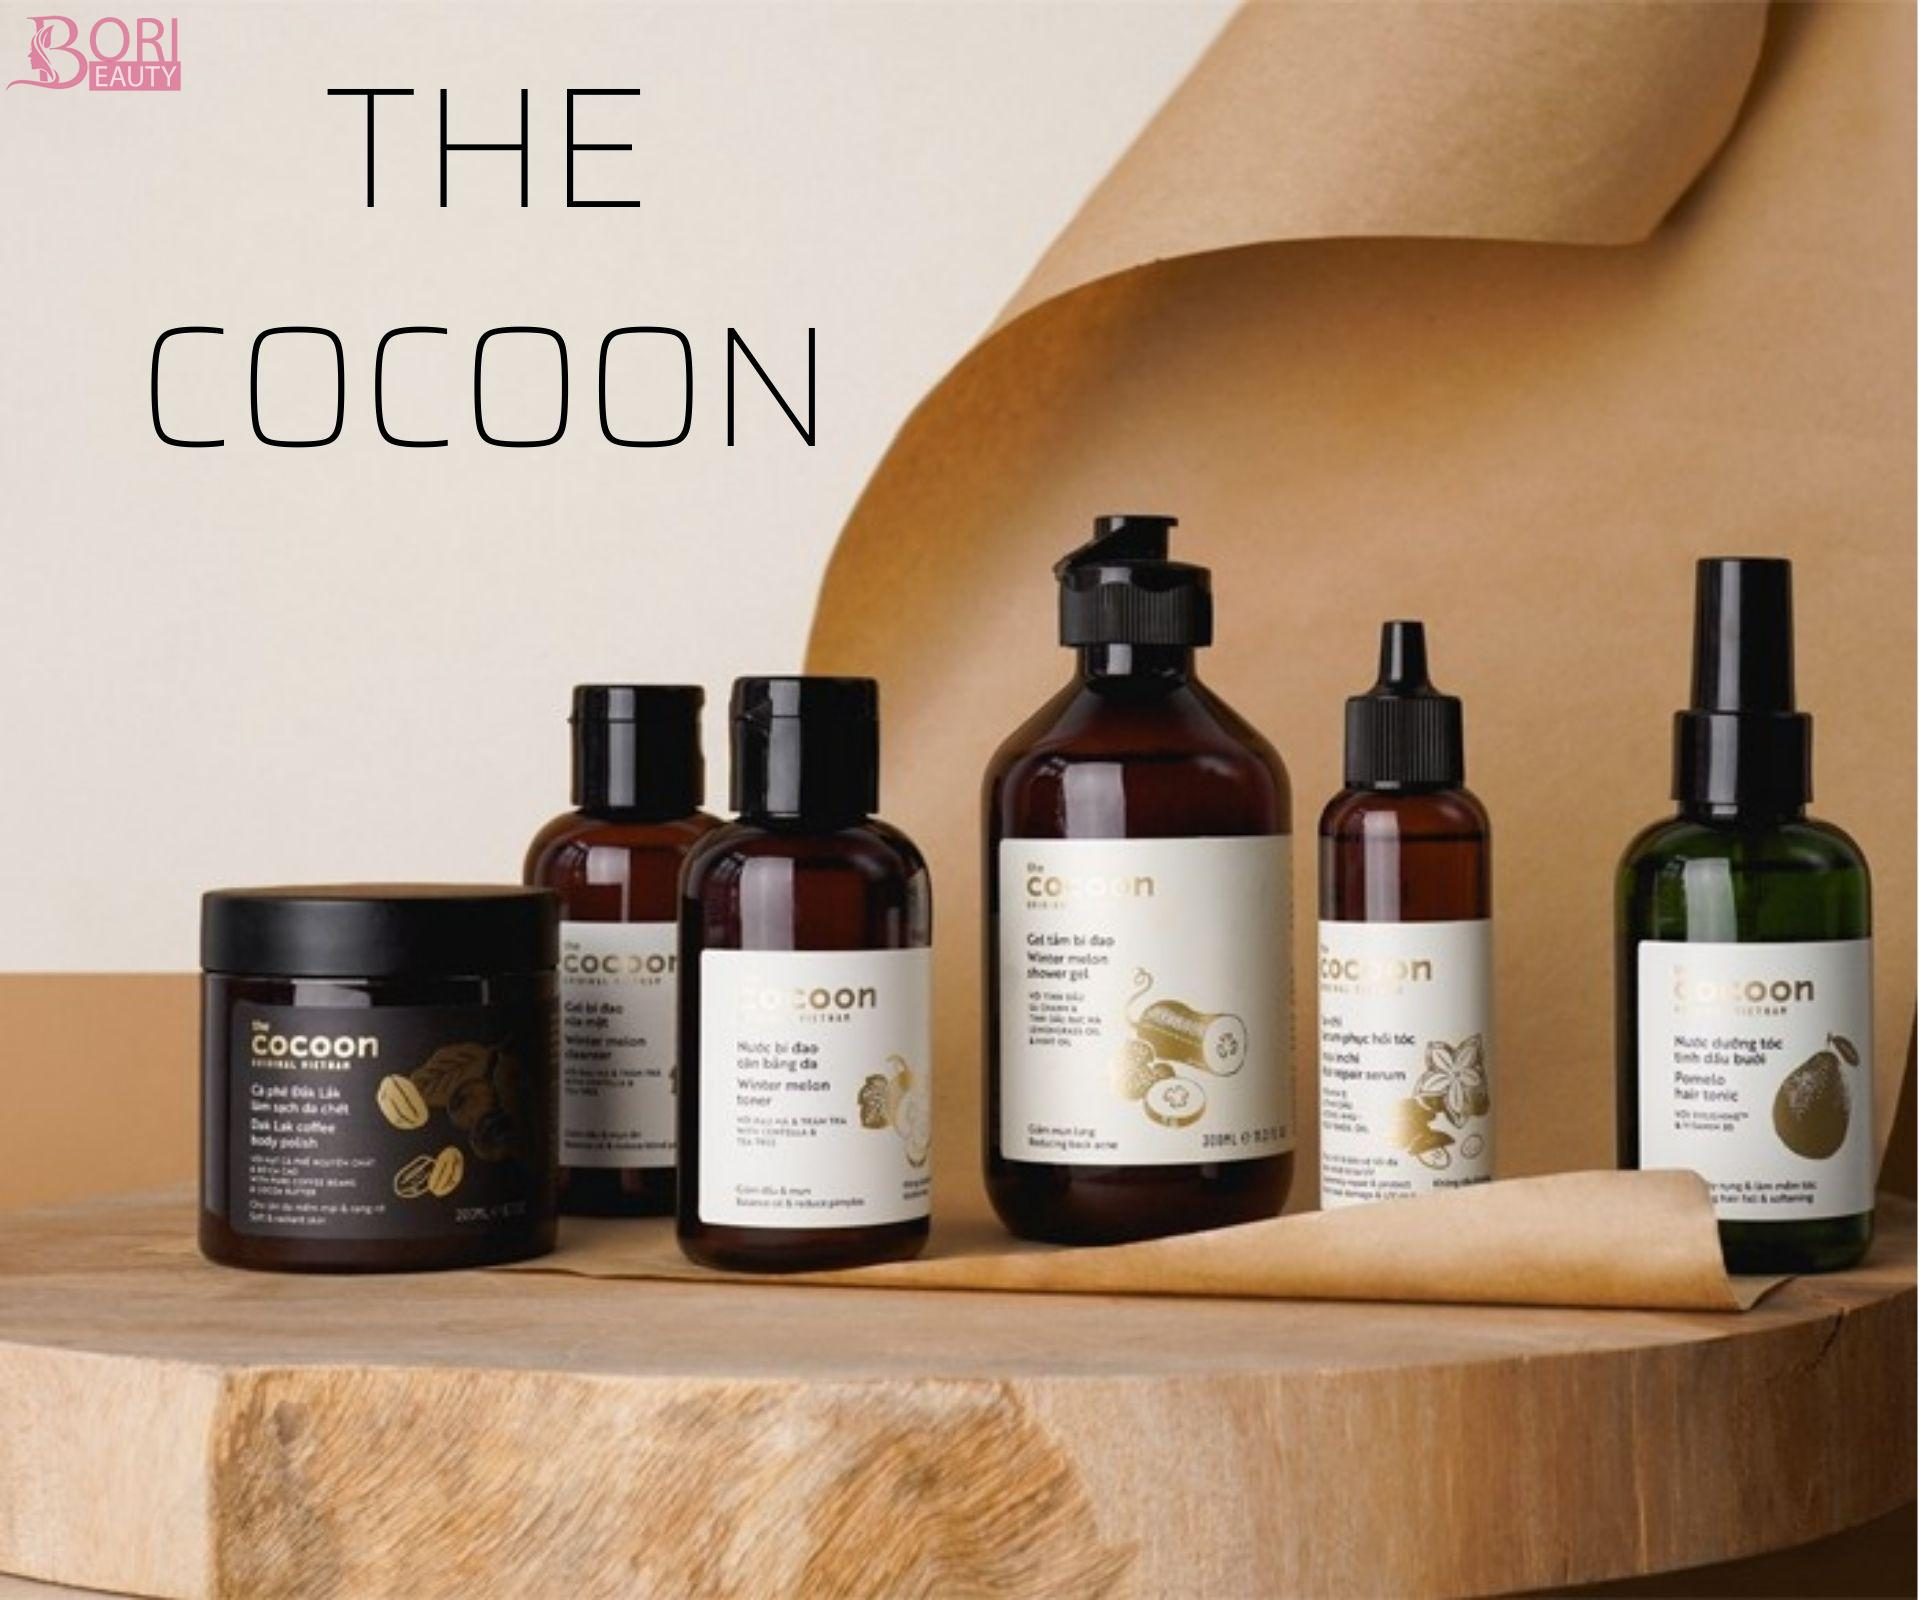 Thương hiệu The Cocoon luôn đem đến cho khách hàng những sản phẩm an toàn chất lượng nhất